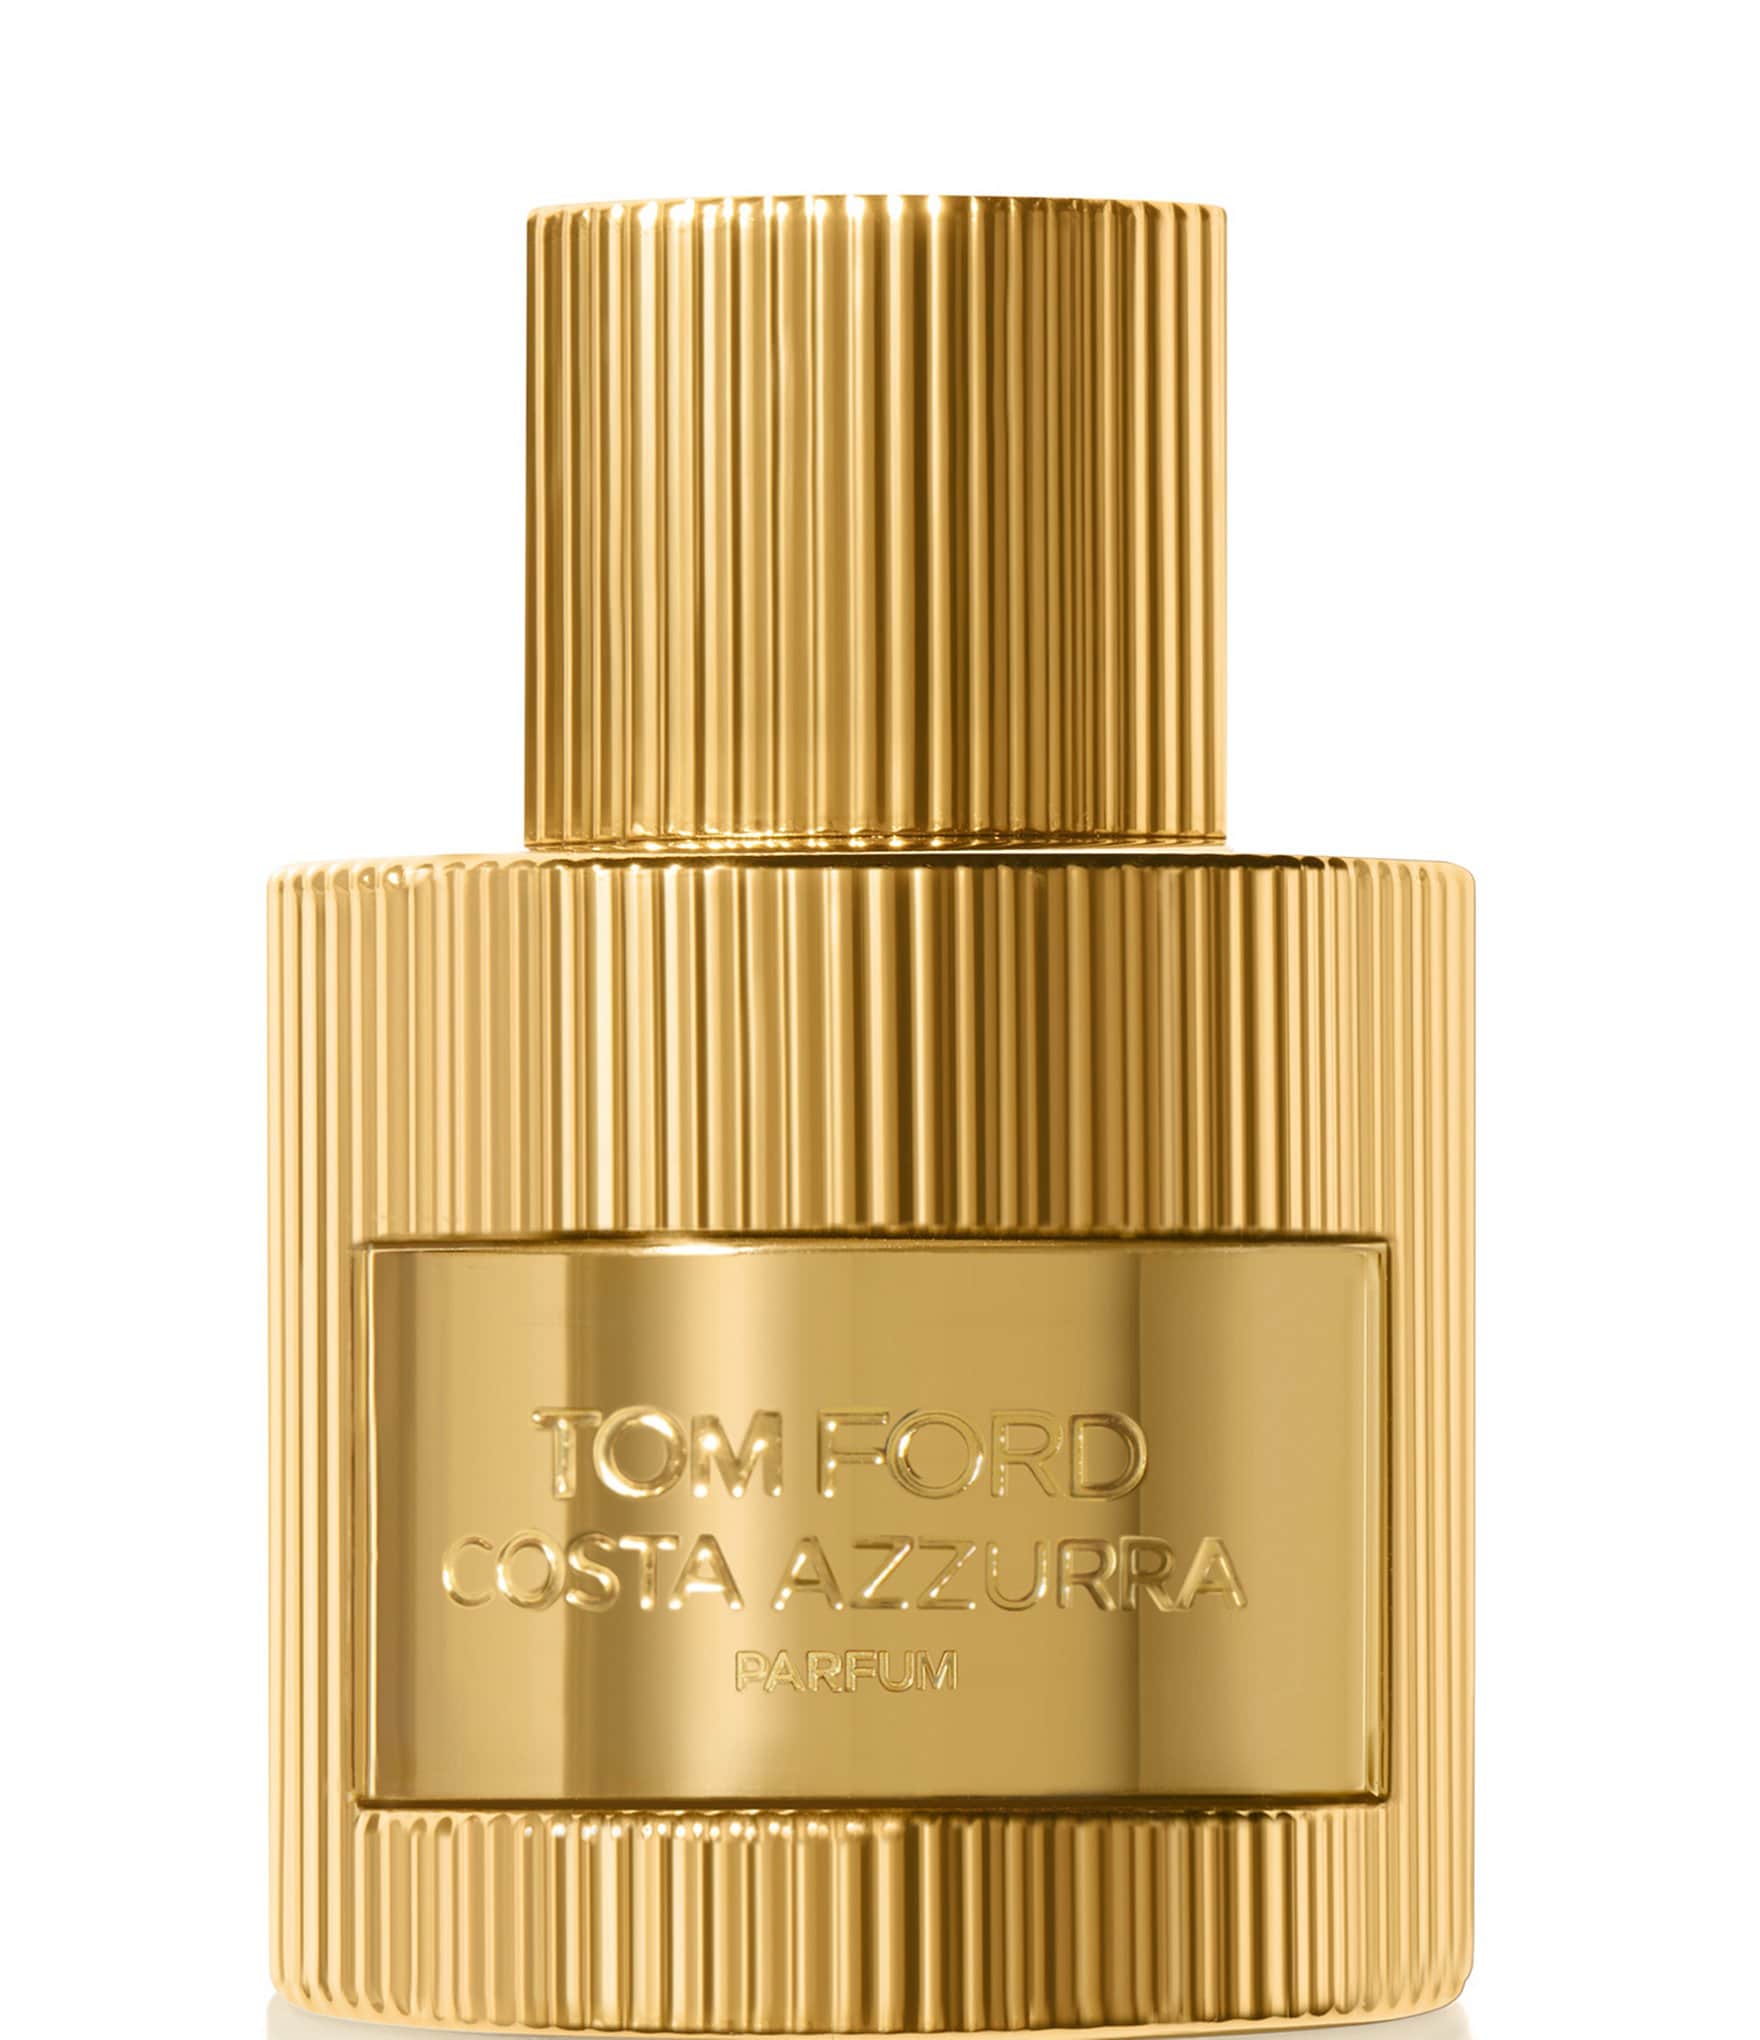 TOM FORD Costa Azzurra Parfum | Dillard's